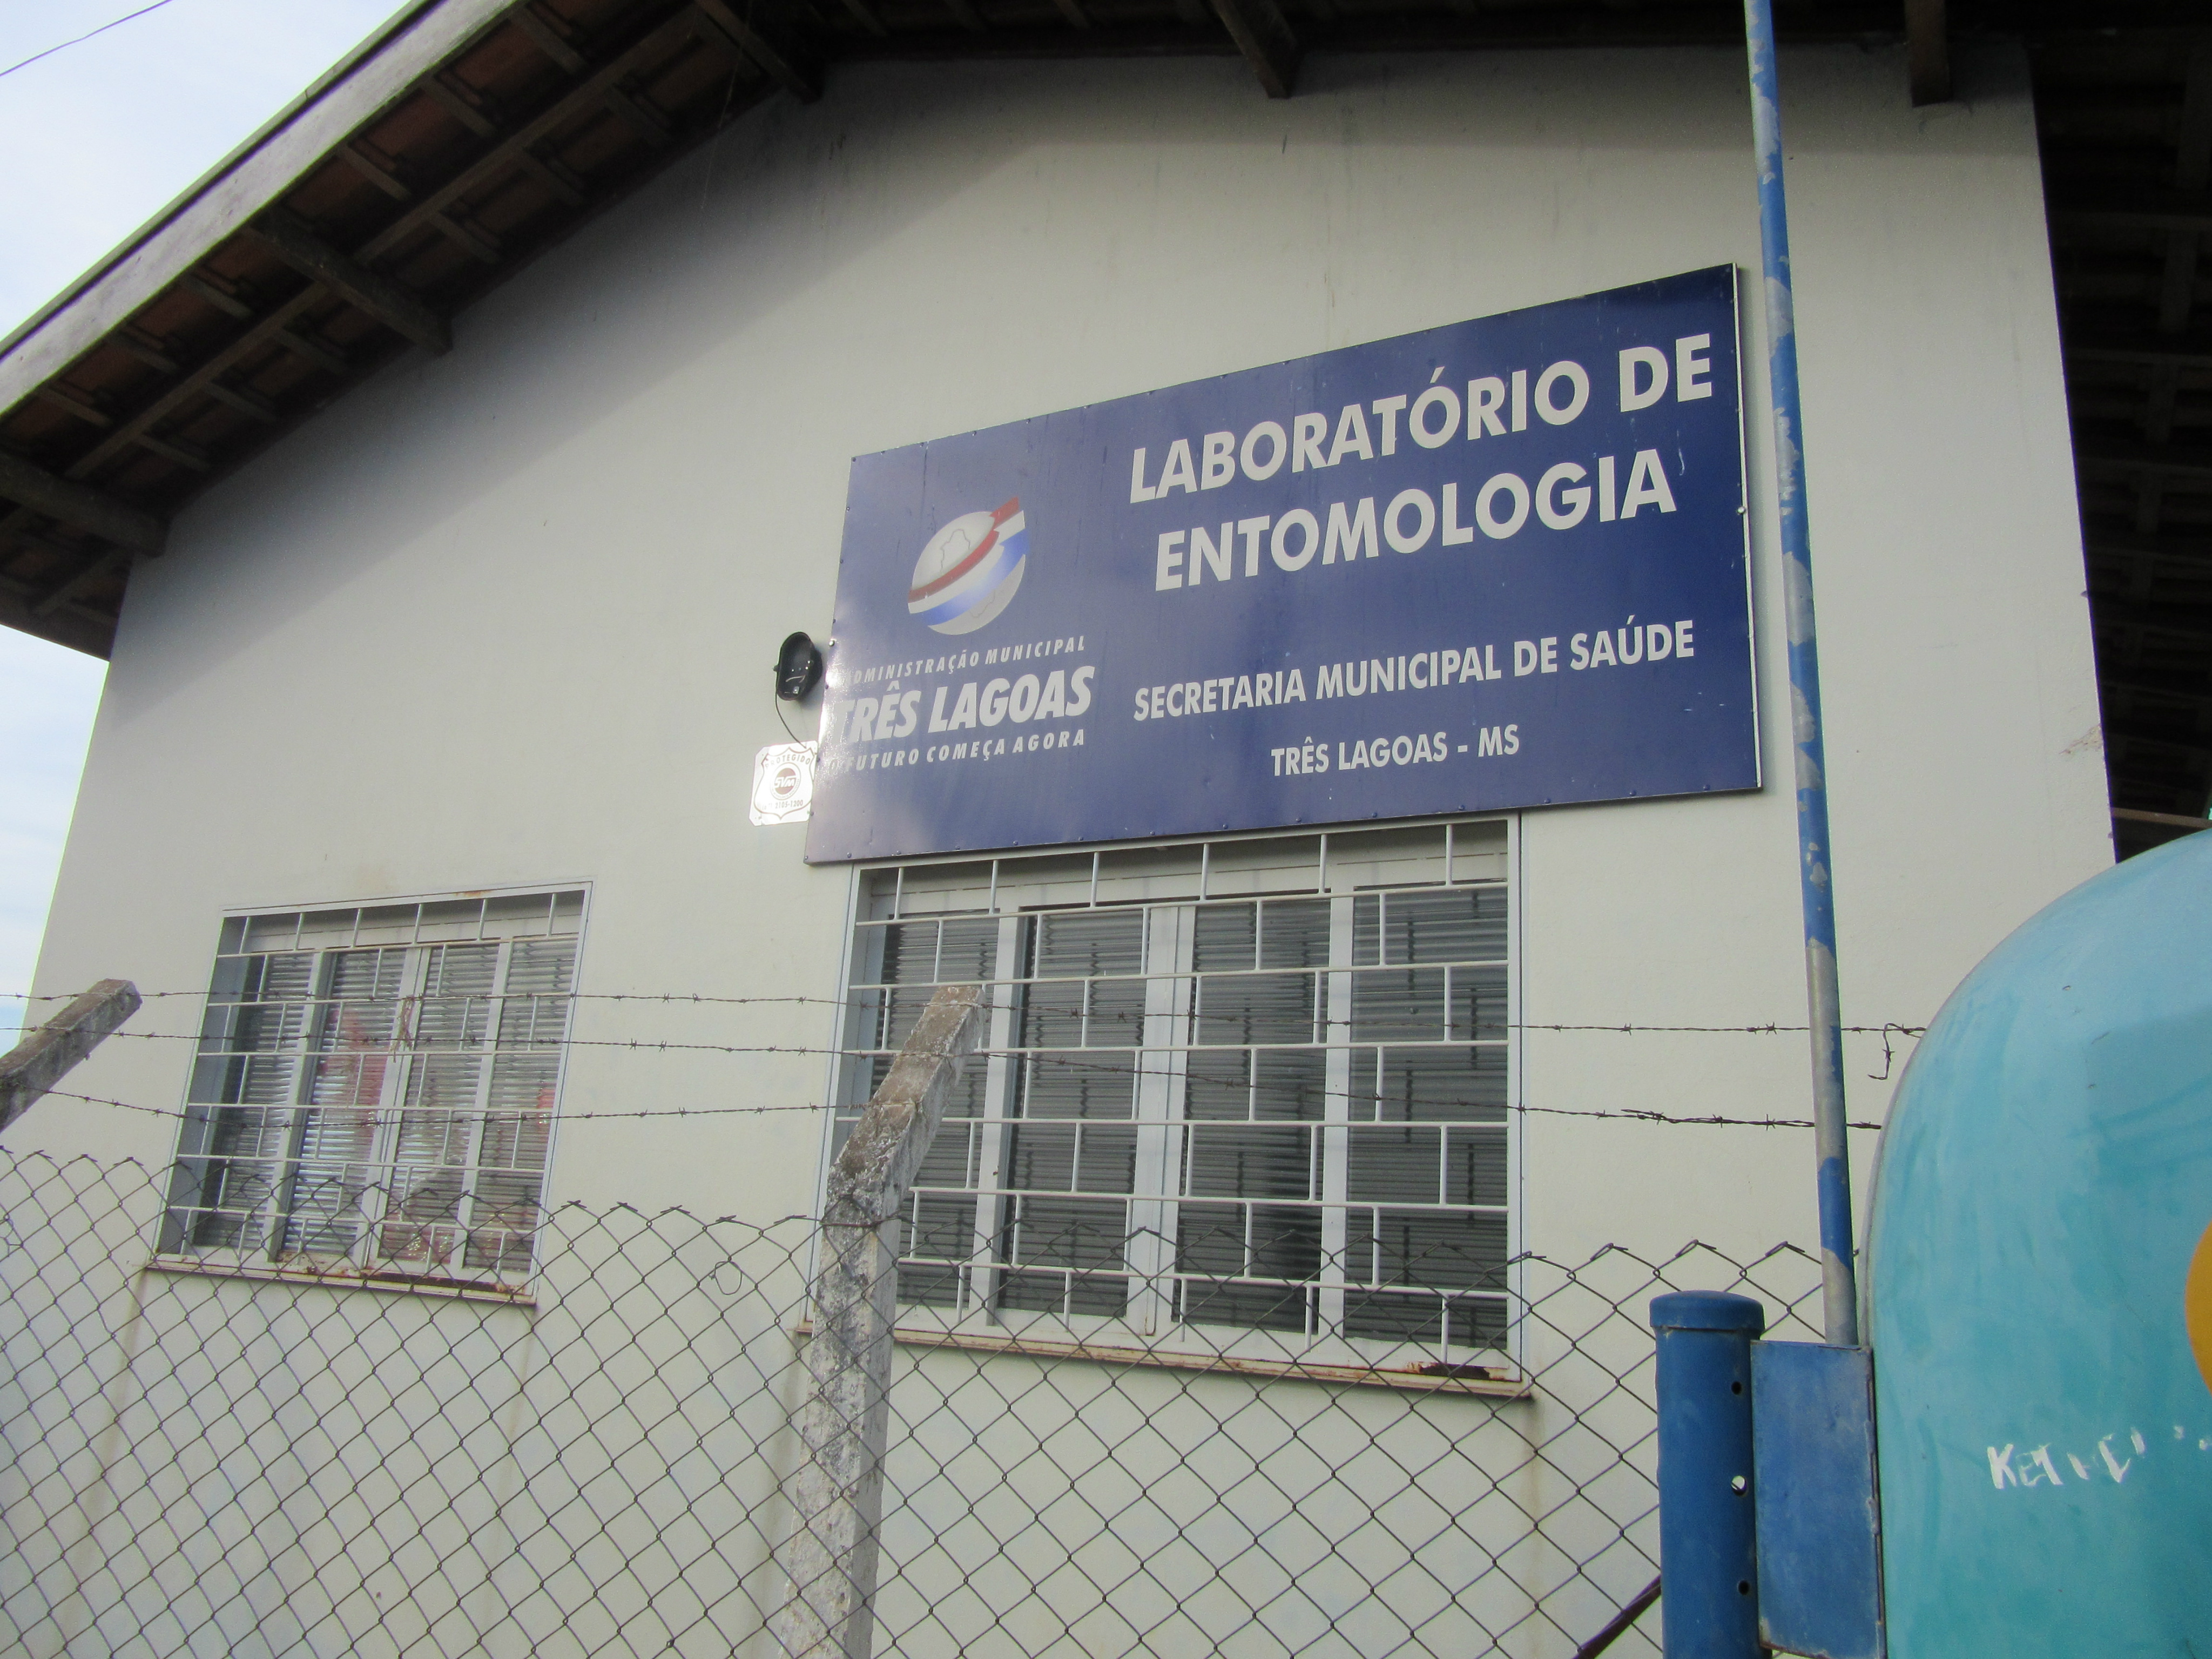 Núcleo de Entomologia da Vila Piloto I em Três Lagoas (MS) sofre tentativa de furto. Fonte: Radio Caçula.